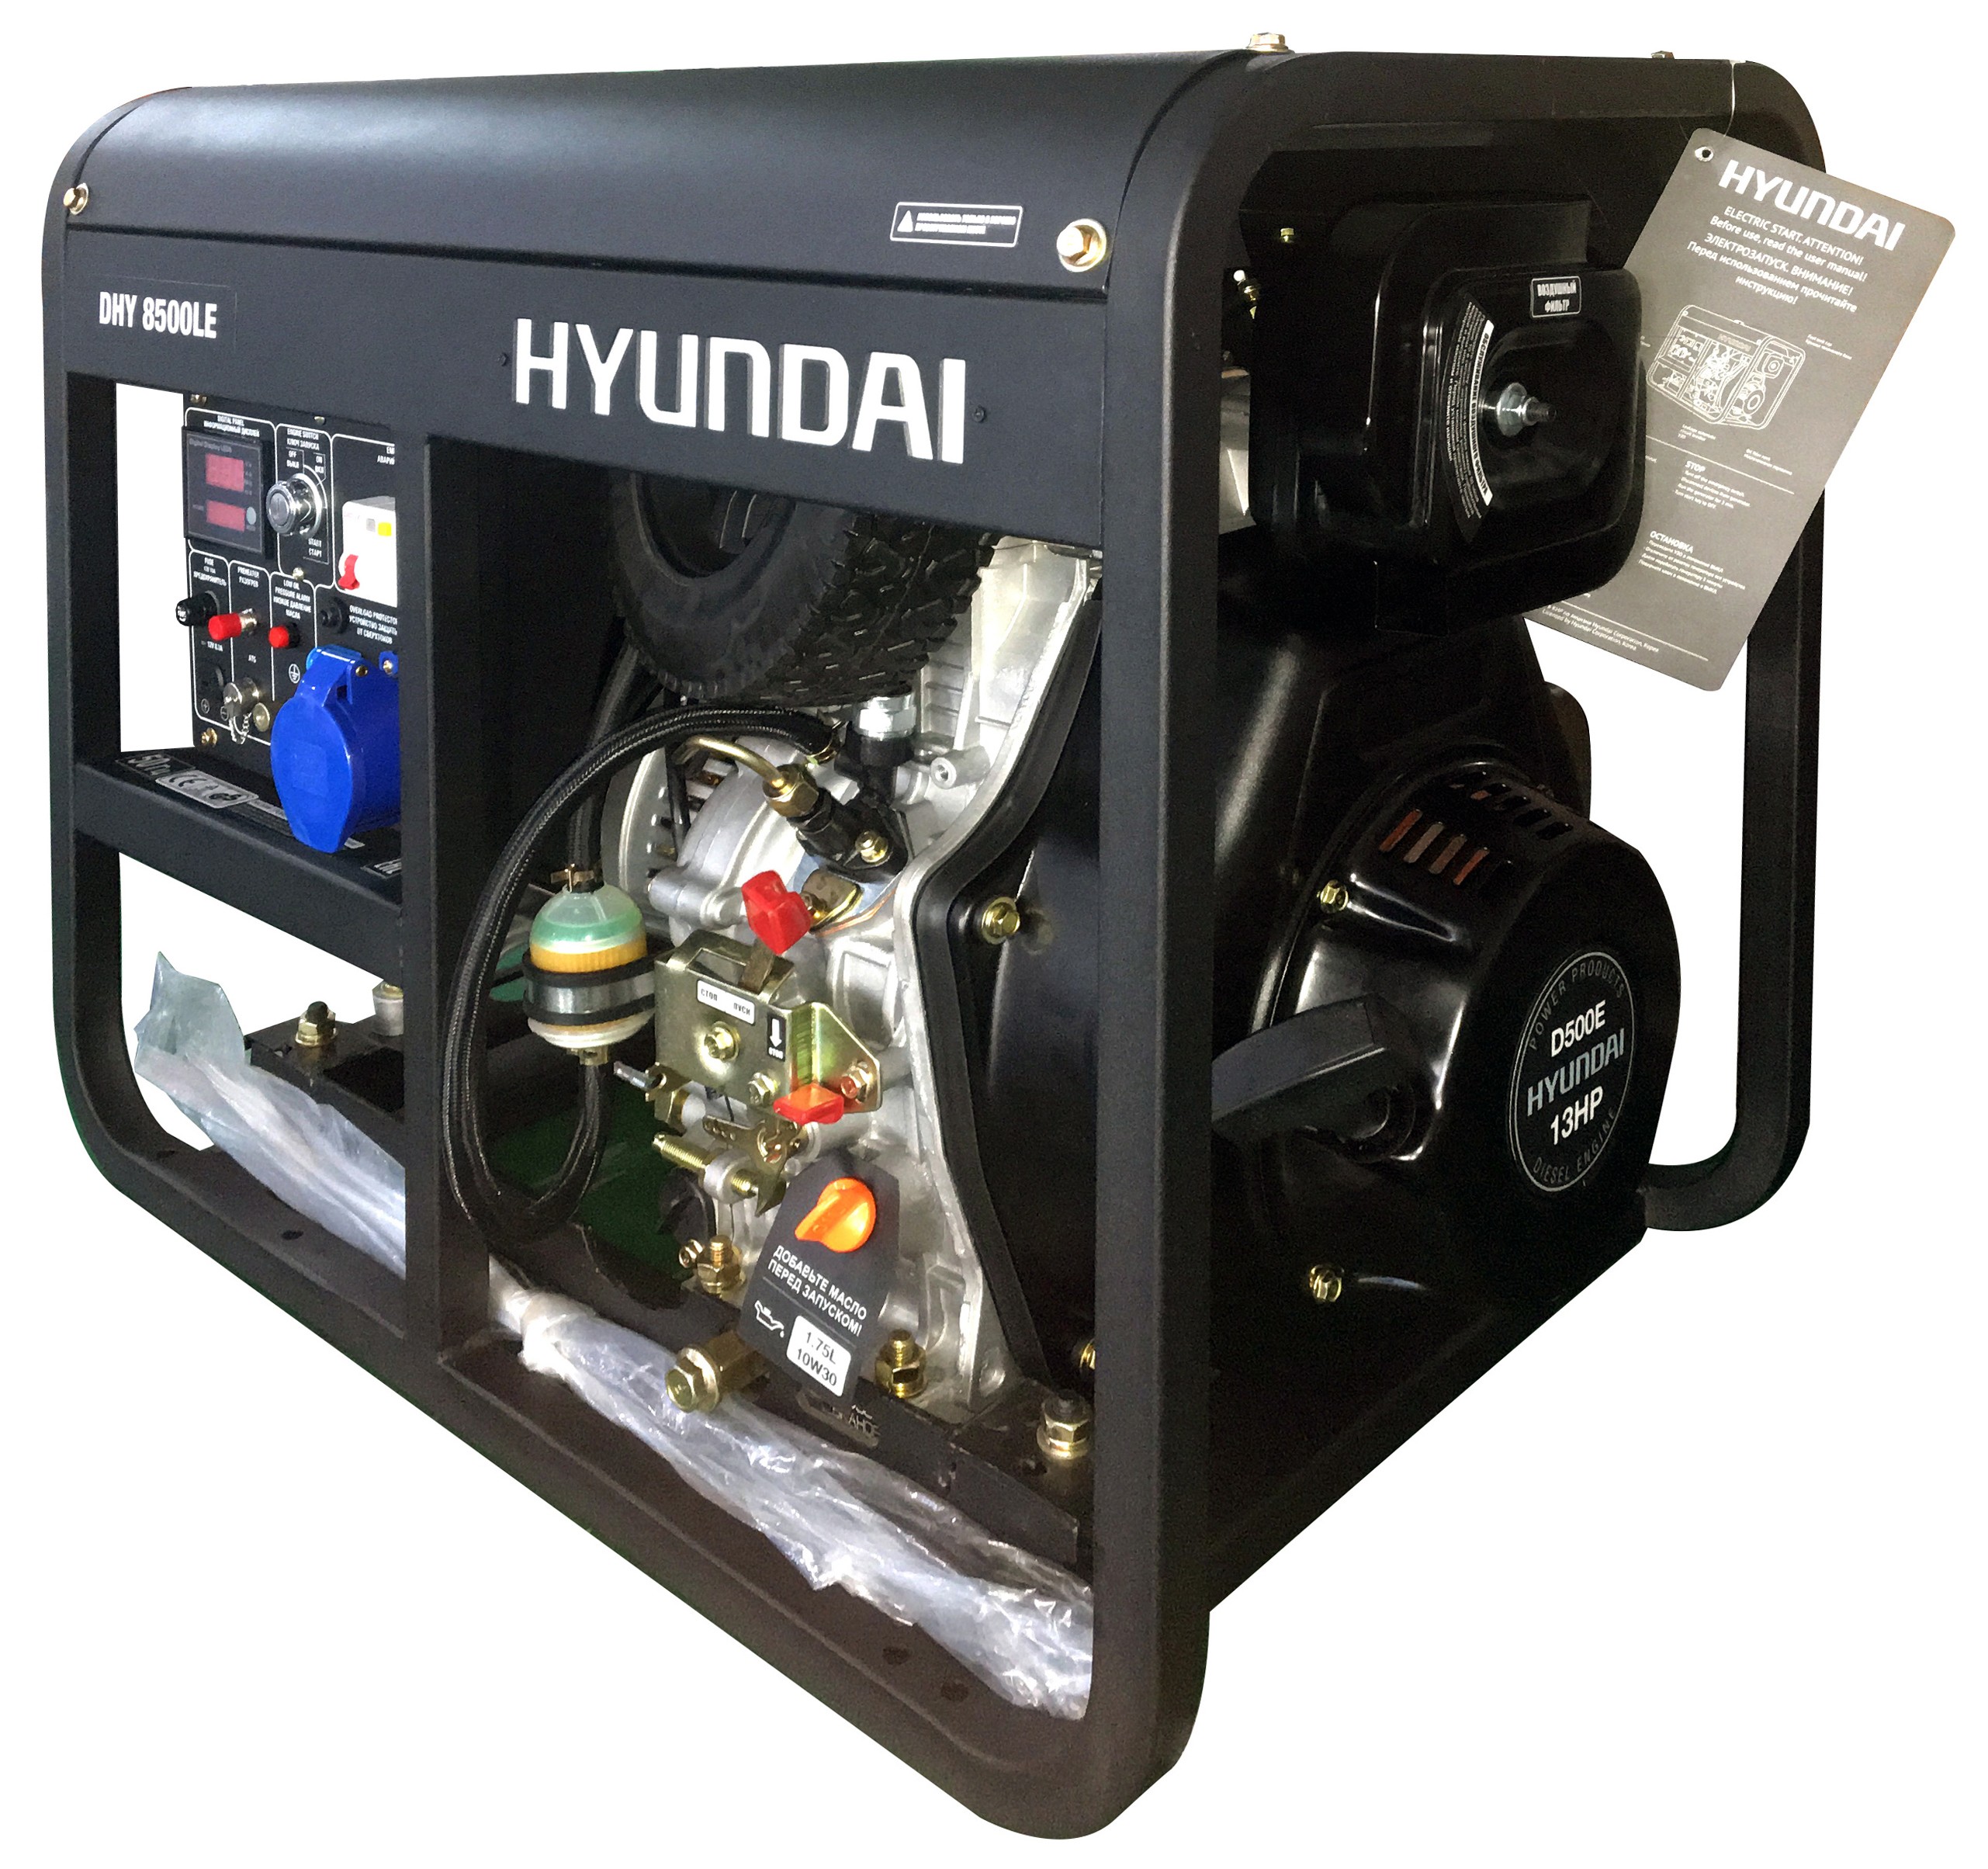 Дизельный генератор Hyundai DHY 8500LE дизельный генератор hyundai dhy 8500le 3